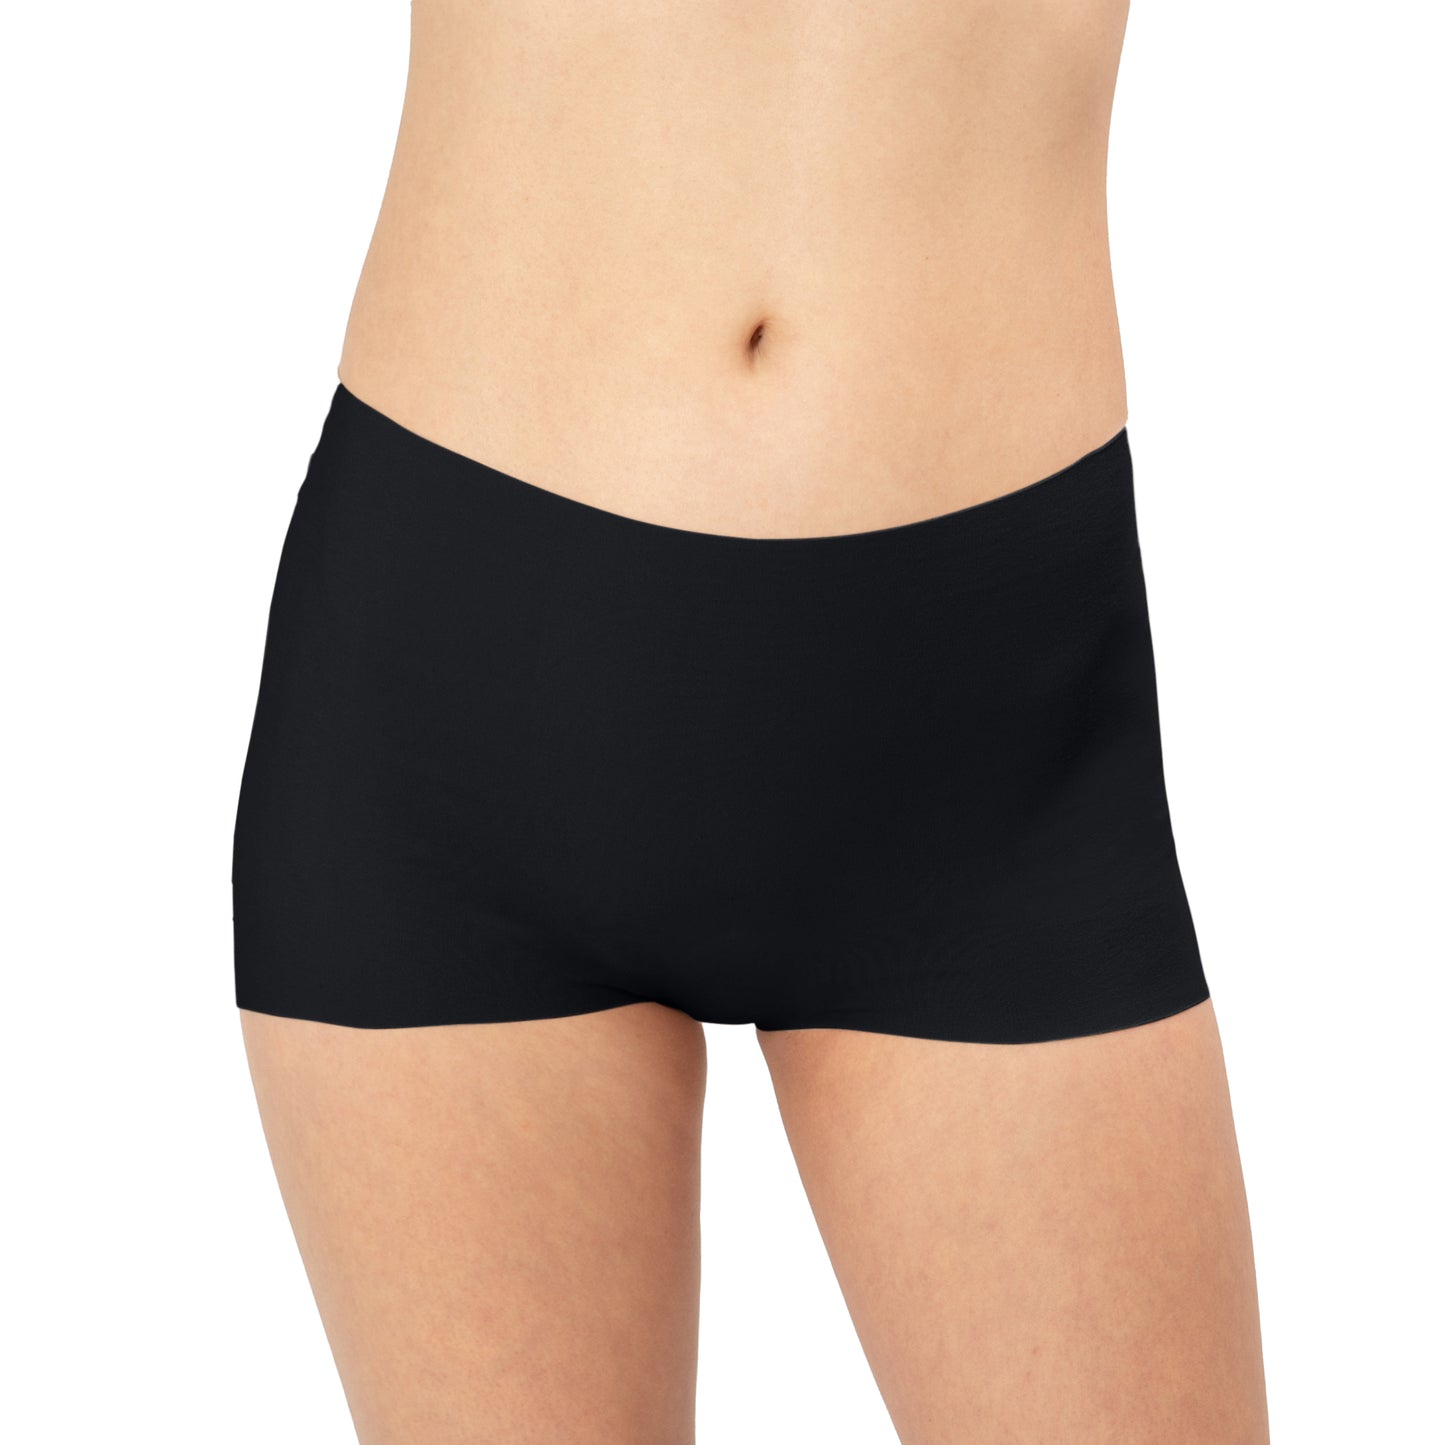 Shortie Underwear - Black, Pale, Tan Bras & Lingerie - Underwear - Short PANTY PROMISE BLACK XS 